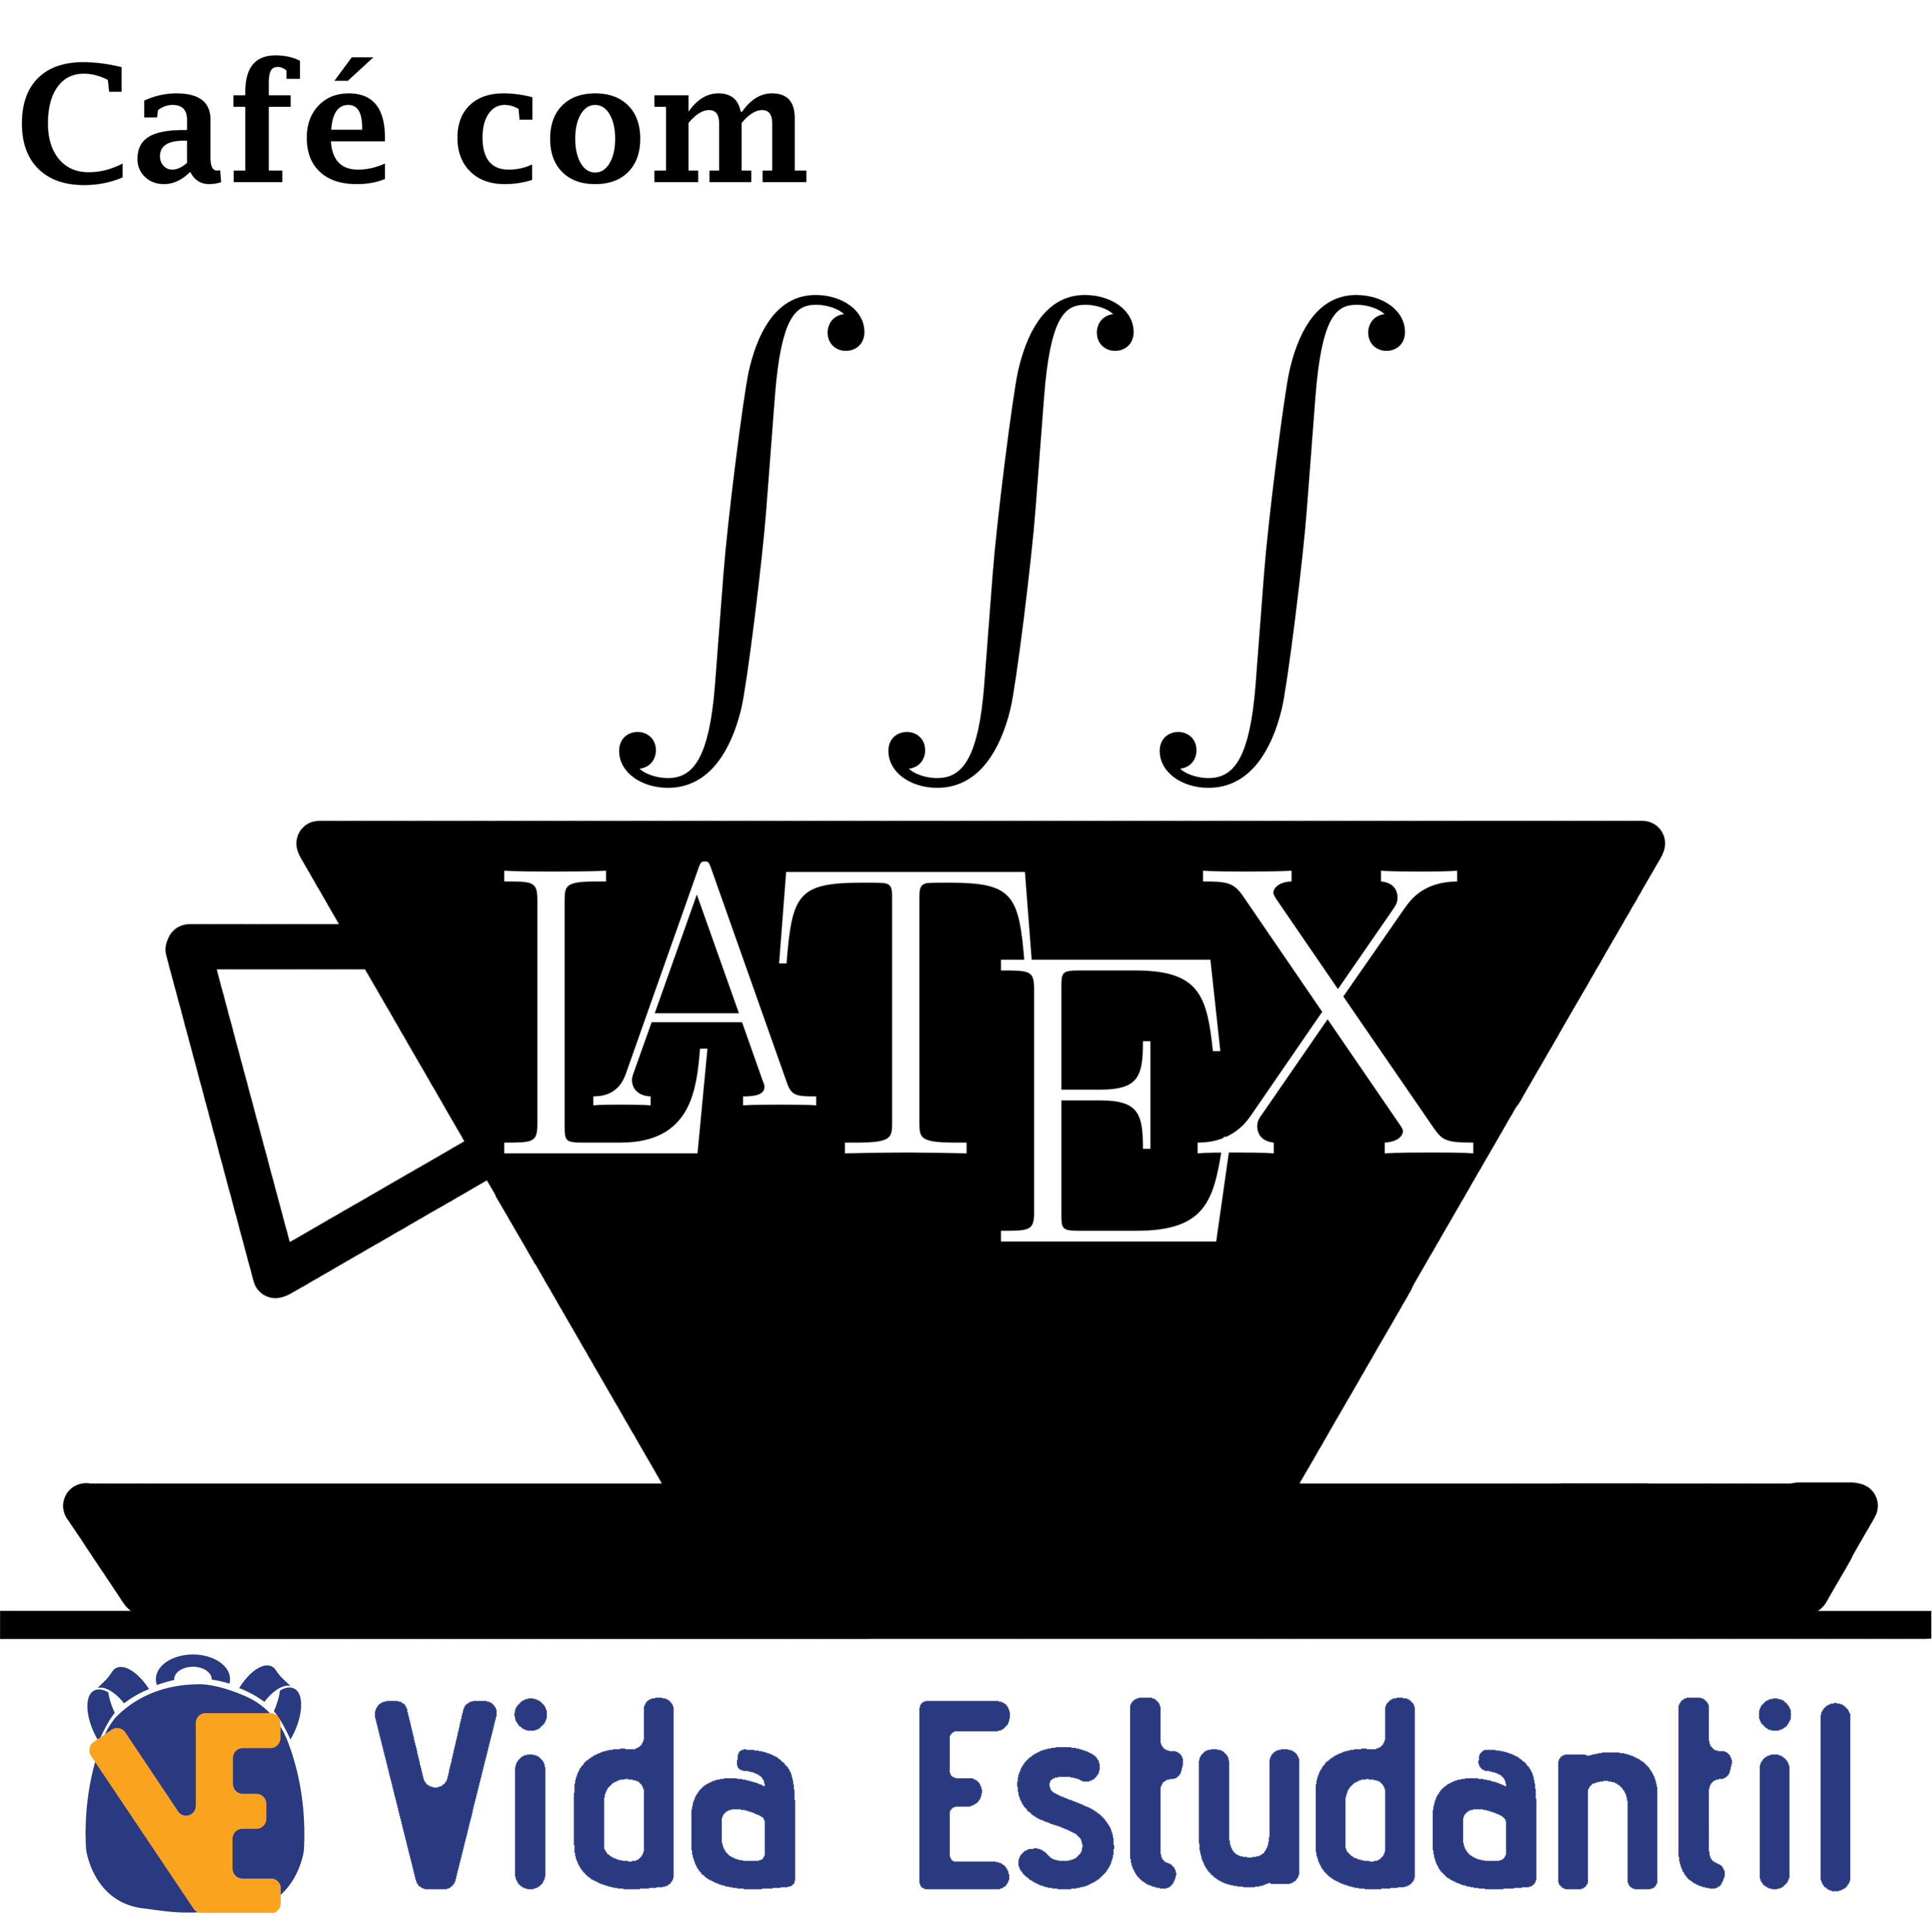 Café com LaTeX - vidaestudantil.com